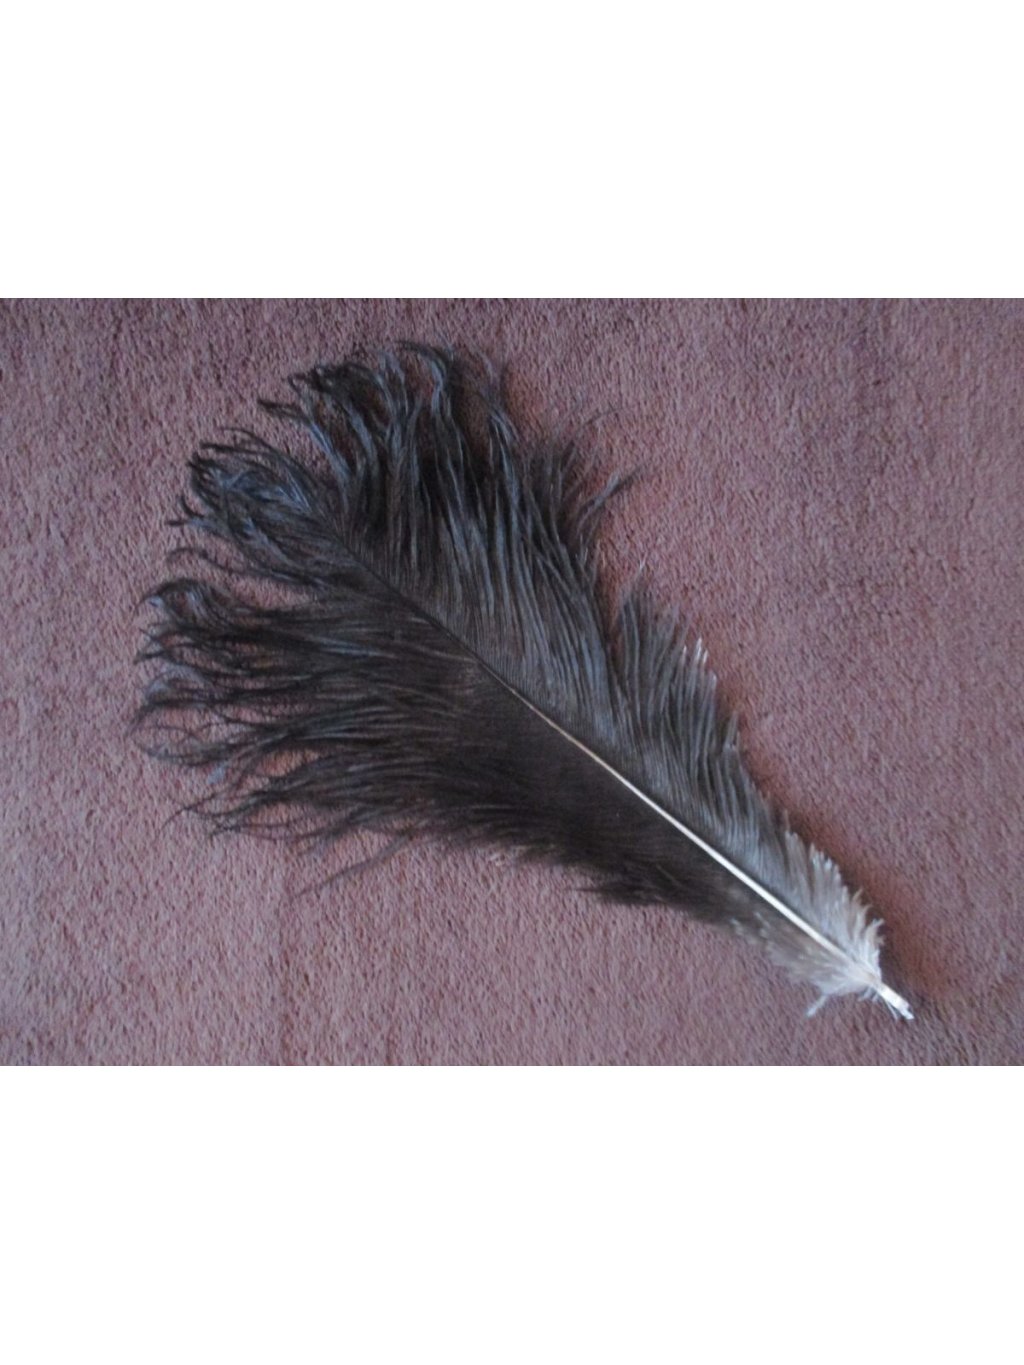 Pštrosí peří černé 30 - 35 cm